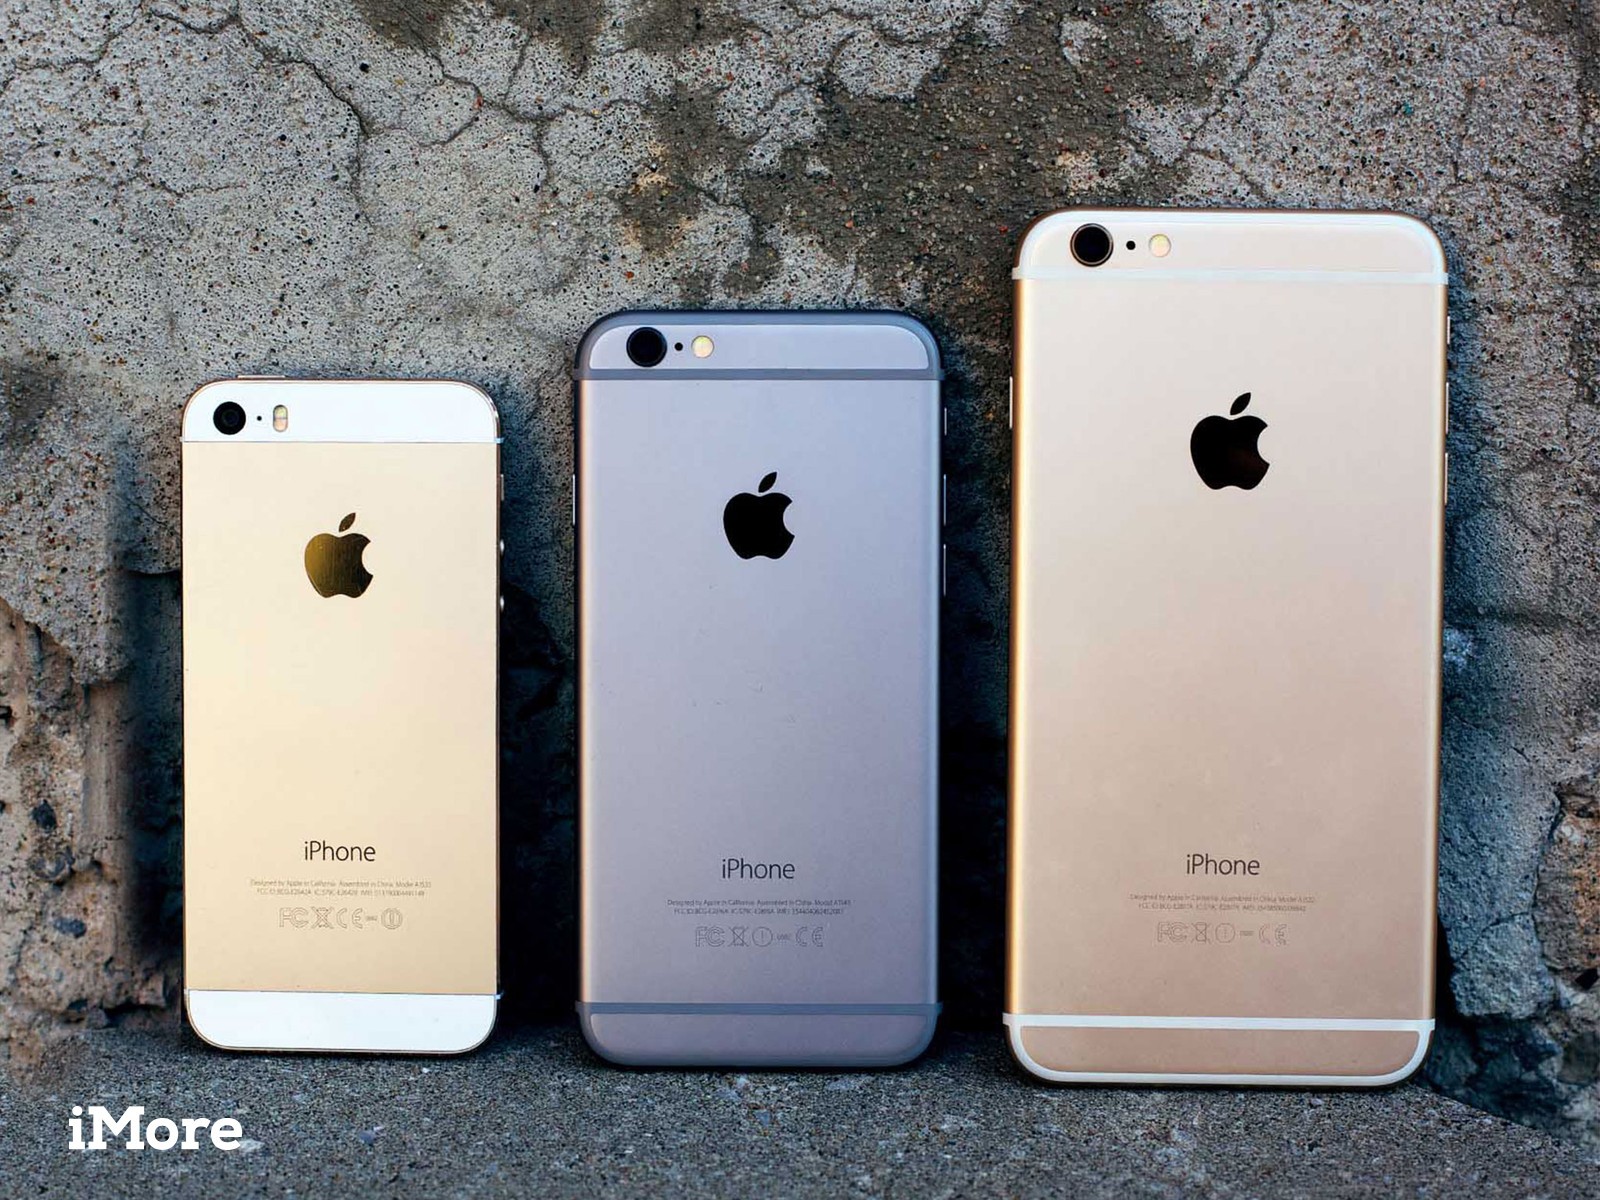 Alla ricerca di un iPhone 7 a prezzi scontati? Questo modello ricondizionato costa pochissimo